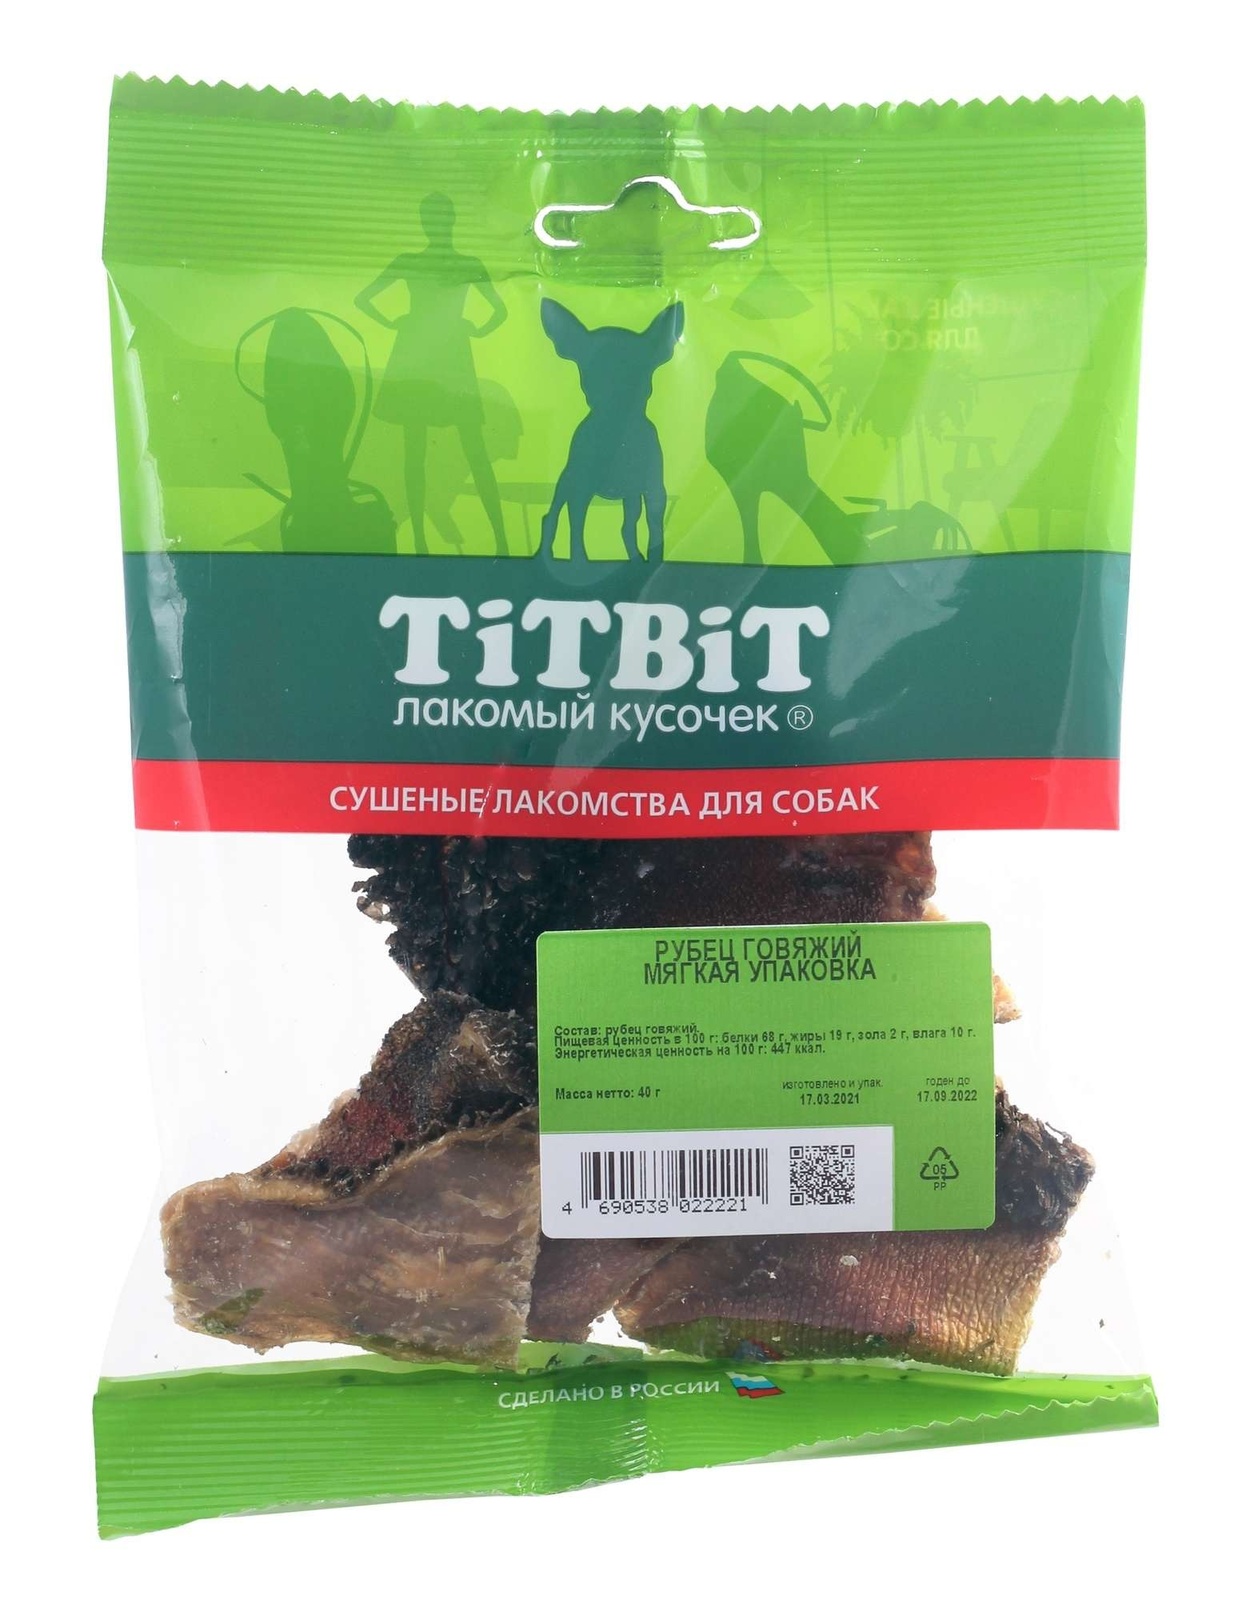 TiTBiT TiTBiT рубец говяжий - мягкая упаковка (40 г) titbit titbit желудок бараний мини мягкая упаковка 40 г